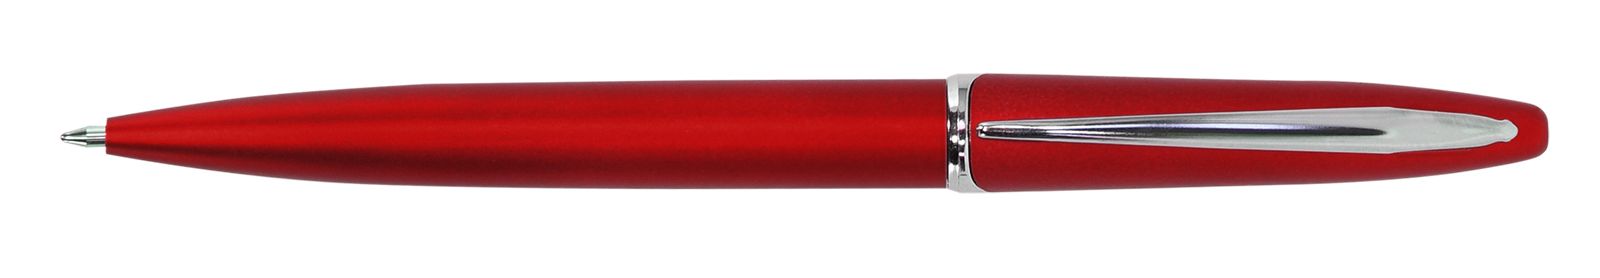 Ручка для логотипа шариковая автоматическая INFORMAT INSPIRATION 0,7 мм, синяя, красный корпус оптом